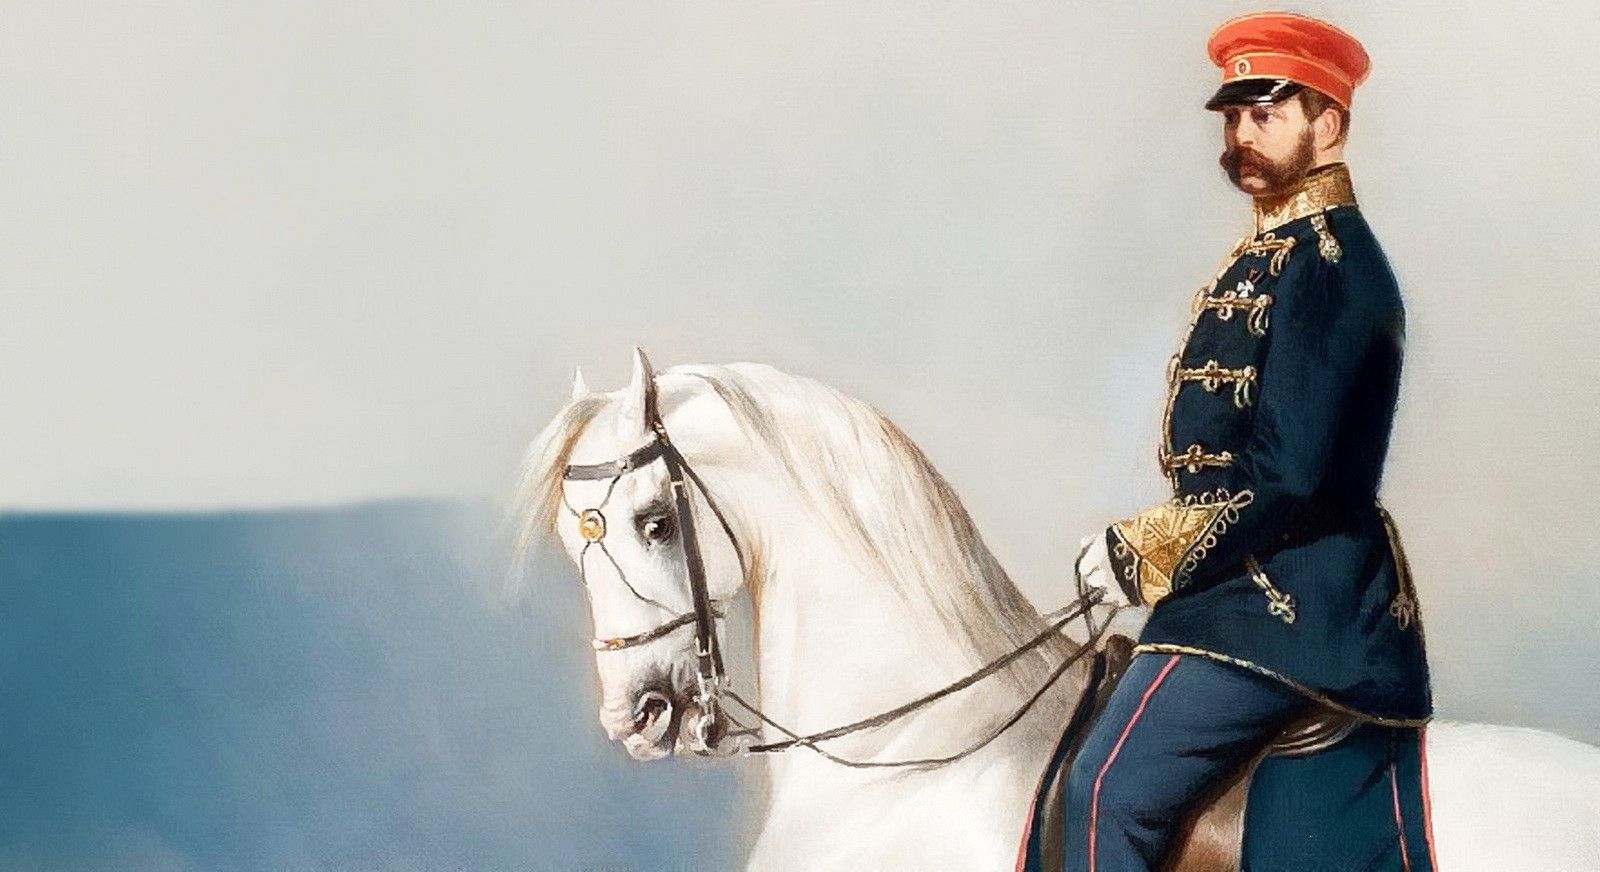 Царь-освободитель (Александр Николаевич Романов, 1818-1881) — Император Всероссийский Александр II 